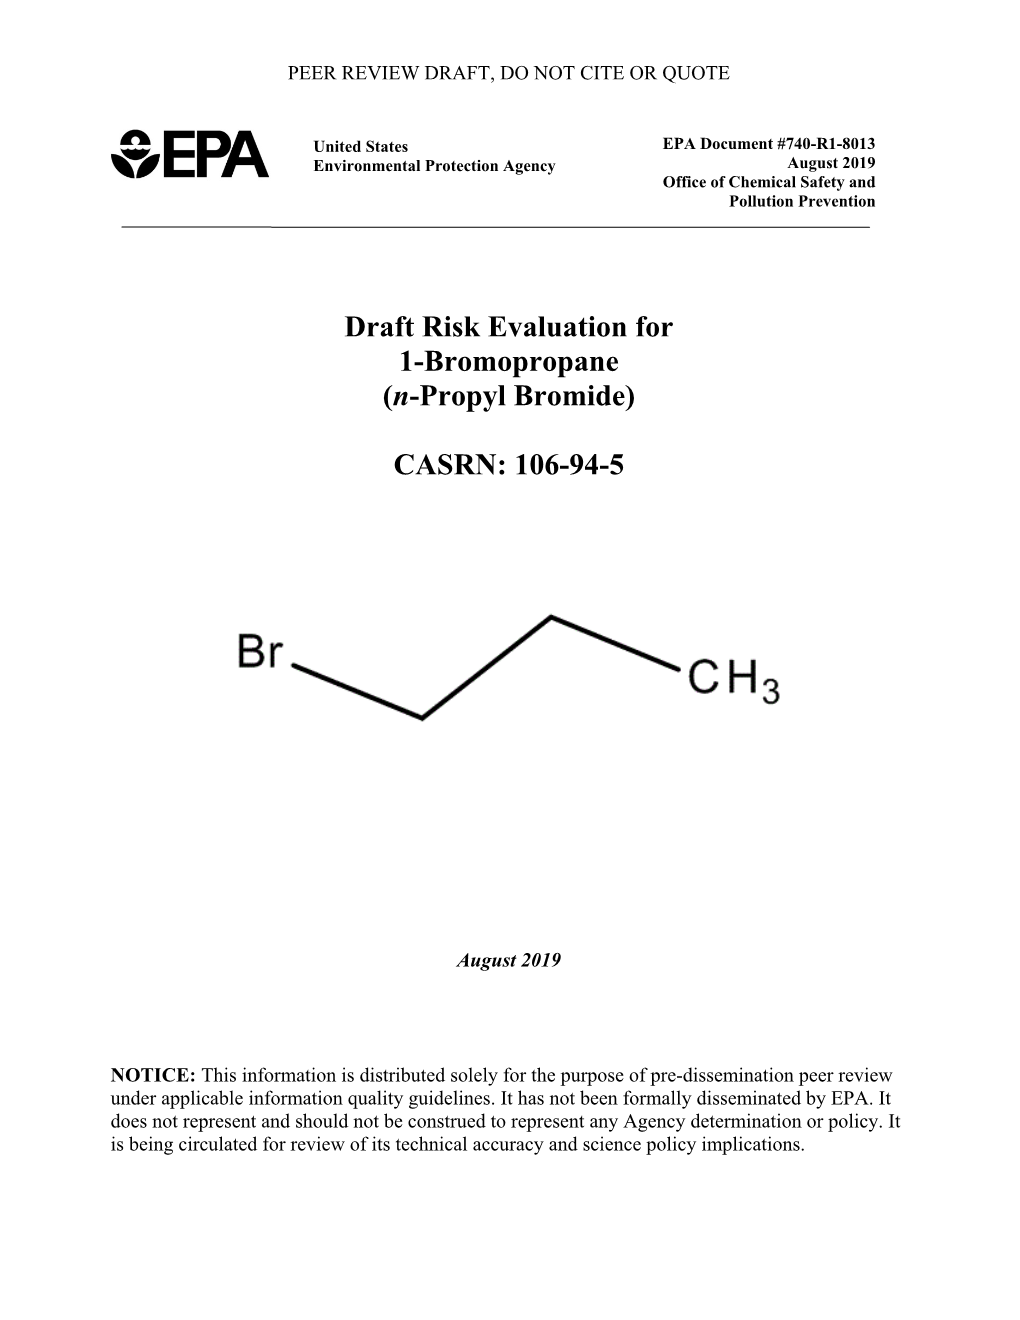 Draft Risk Evaluation for 1-Bromopropane (N-Propyl Bromide)